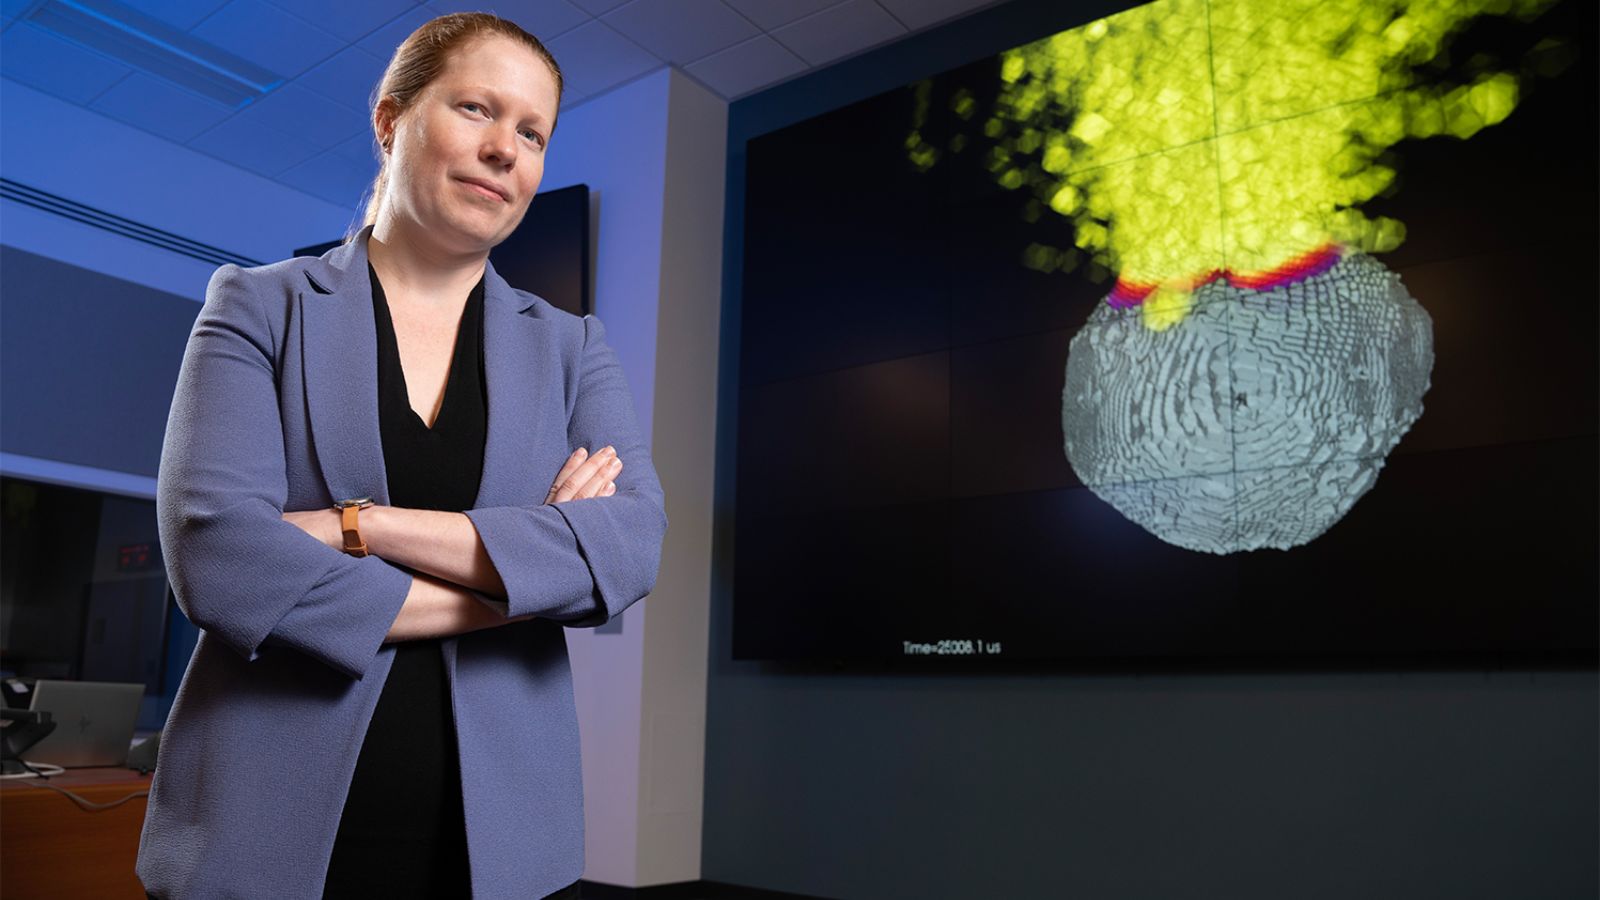 Onderzoekers gebruiken nucleaire simulaties om de verdediging van asteroïden te plannen |  Technologie nieuws